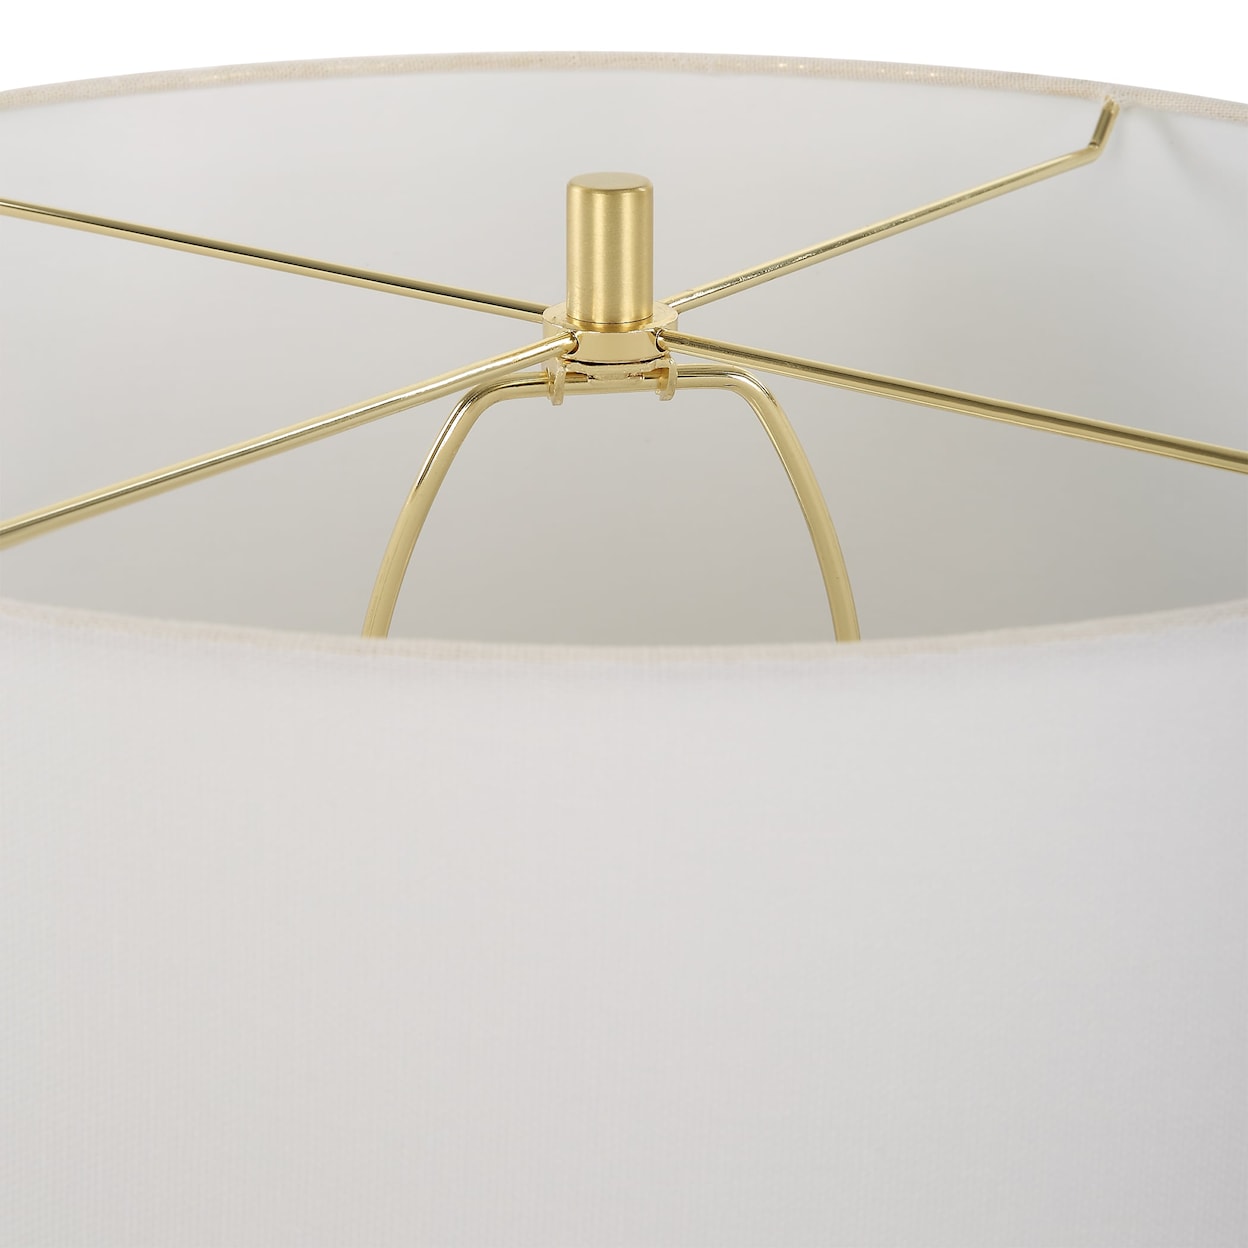 Uttermost Wrenley Wrenley Ridged White Table Lamp